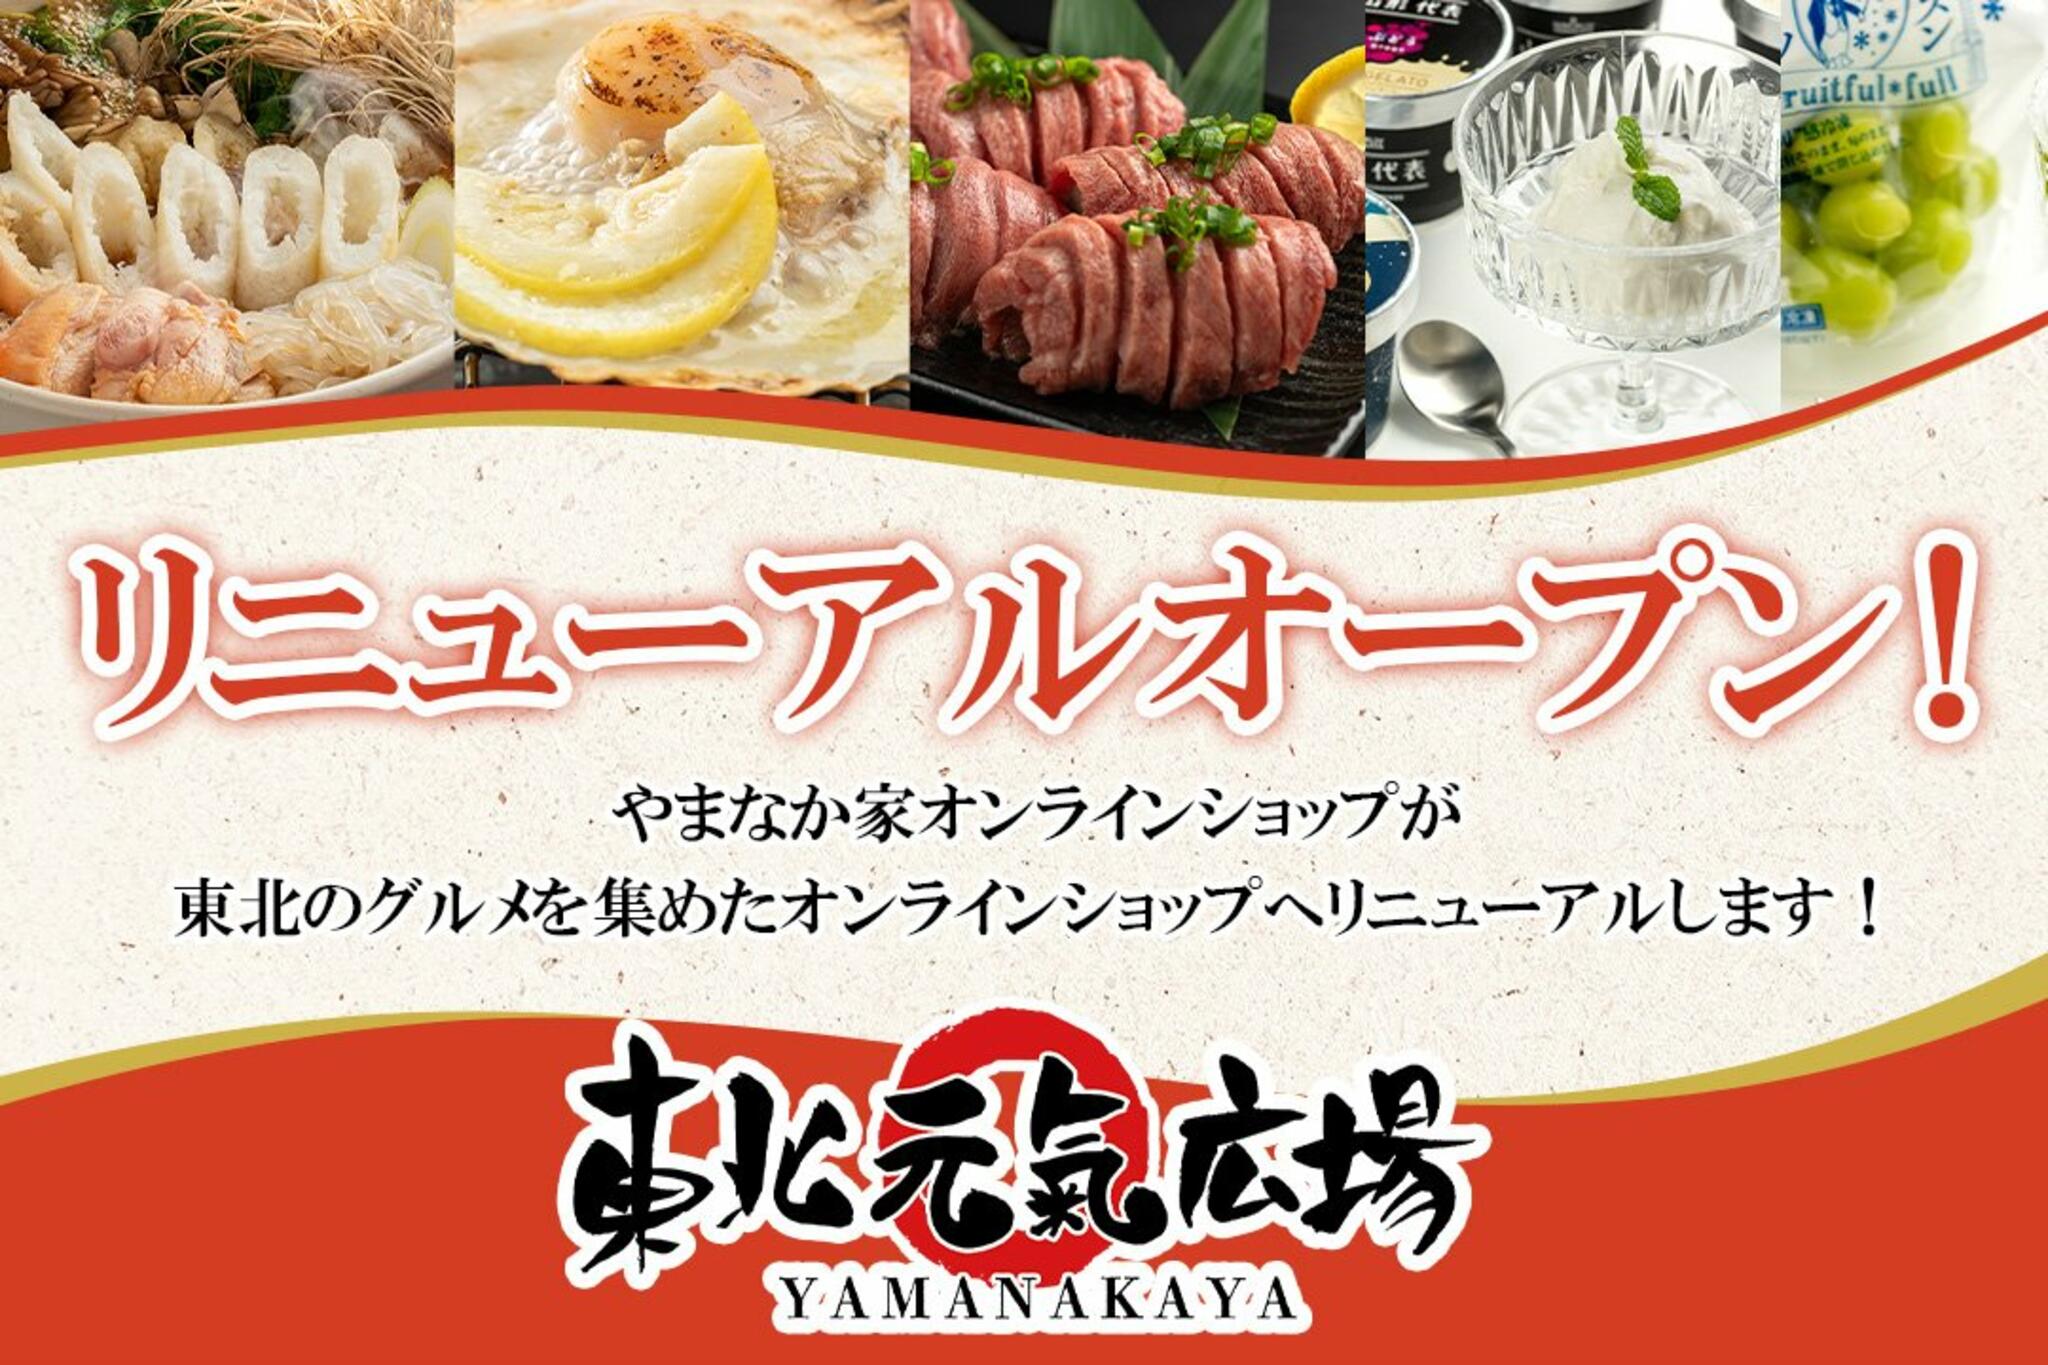 焼肉冷麺やまなか家 北上店からのお知らせ(オンラインショップリニューアルキャンペーンのお知らせ)に関する写真